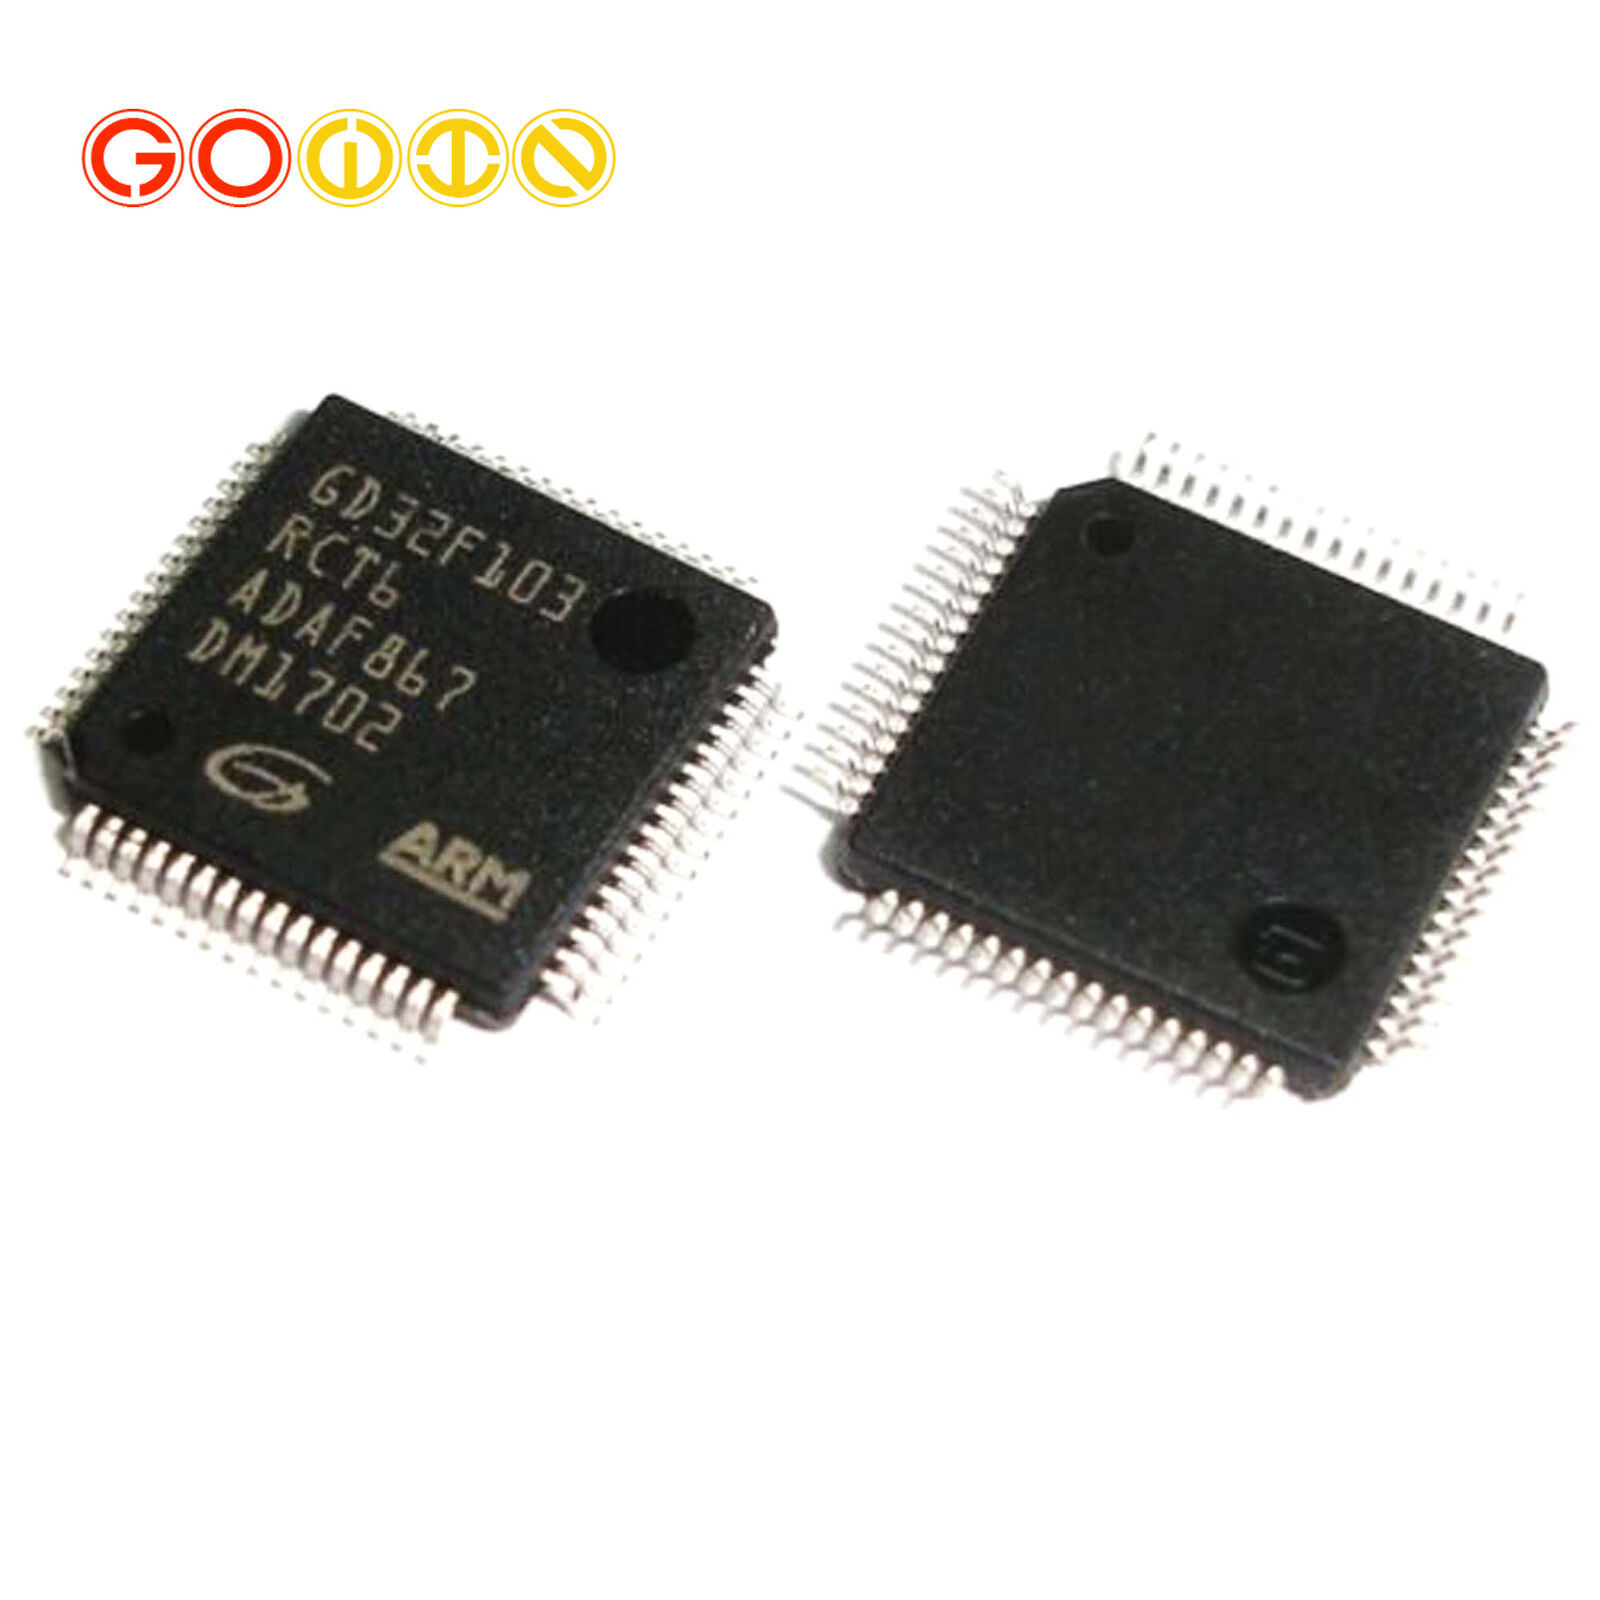 GD32F103RCT6 LQFP64 GD32F103 RCT6 32-bit 72MHz 256KBx8 IC MCU FLASH Cortex M3